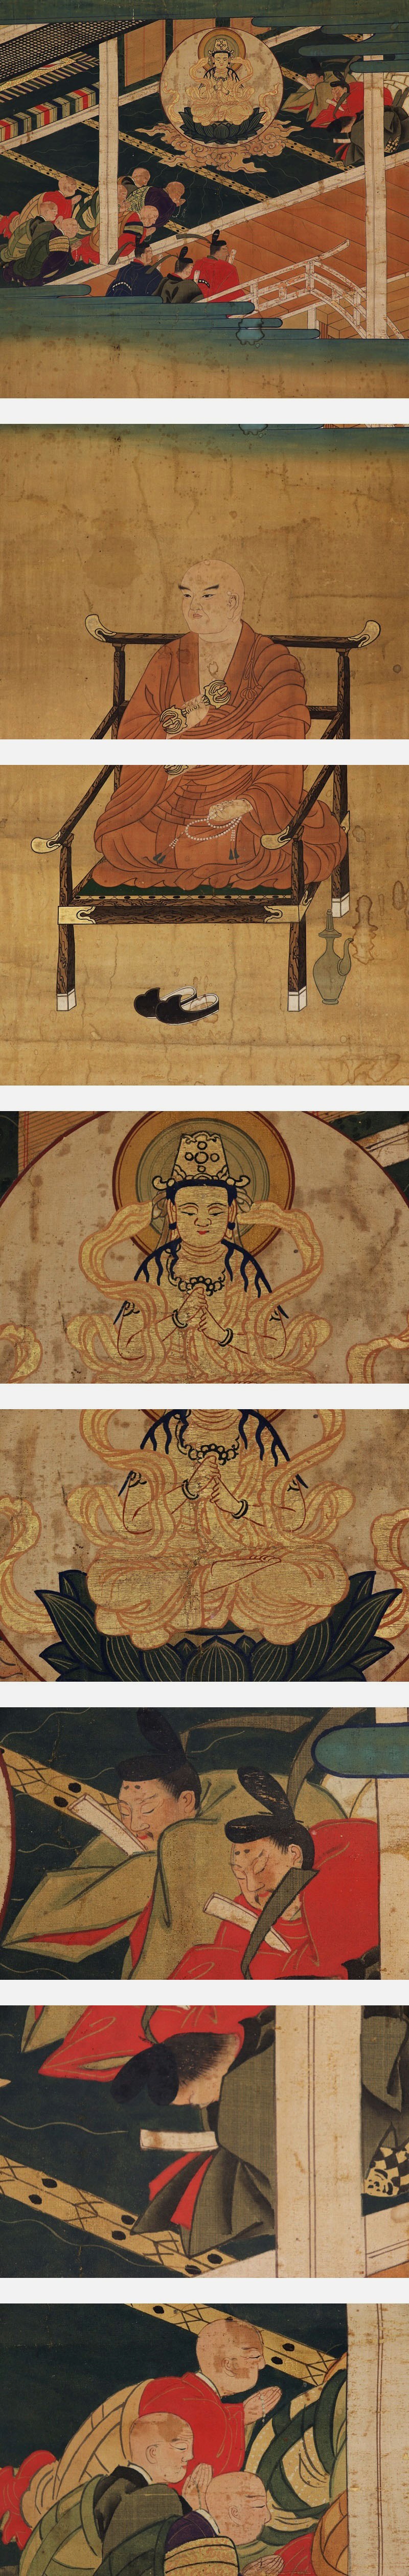 お買い得安い希少古仏画◆絹本◆合箱◆掛軸 v02119 人物、菩薩